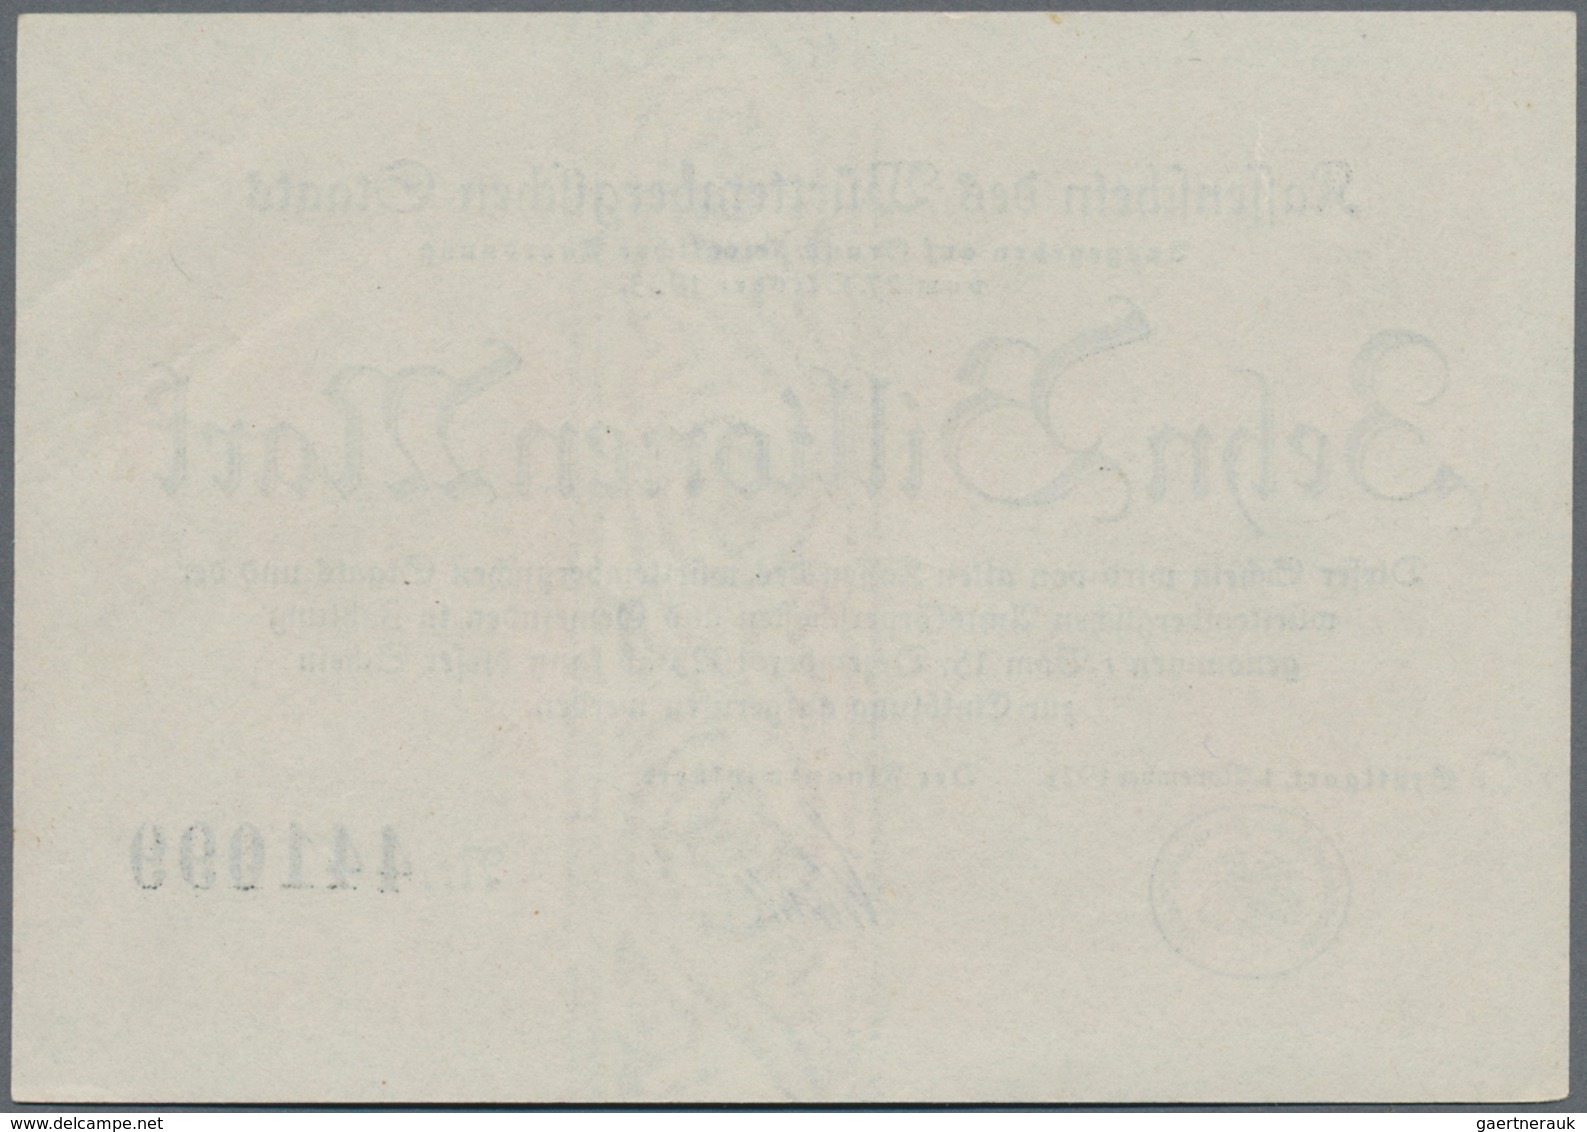 Deutschland - Länderscheine: Württemberg, Finanzminister, 100 Mrd. Mark, 31.10.1923, ohne Serie bzw.